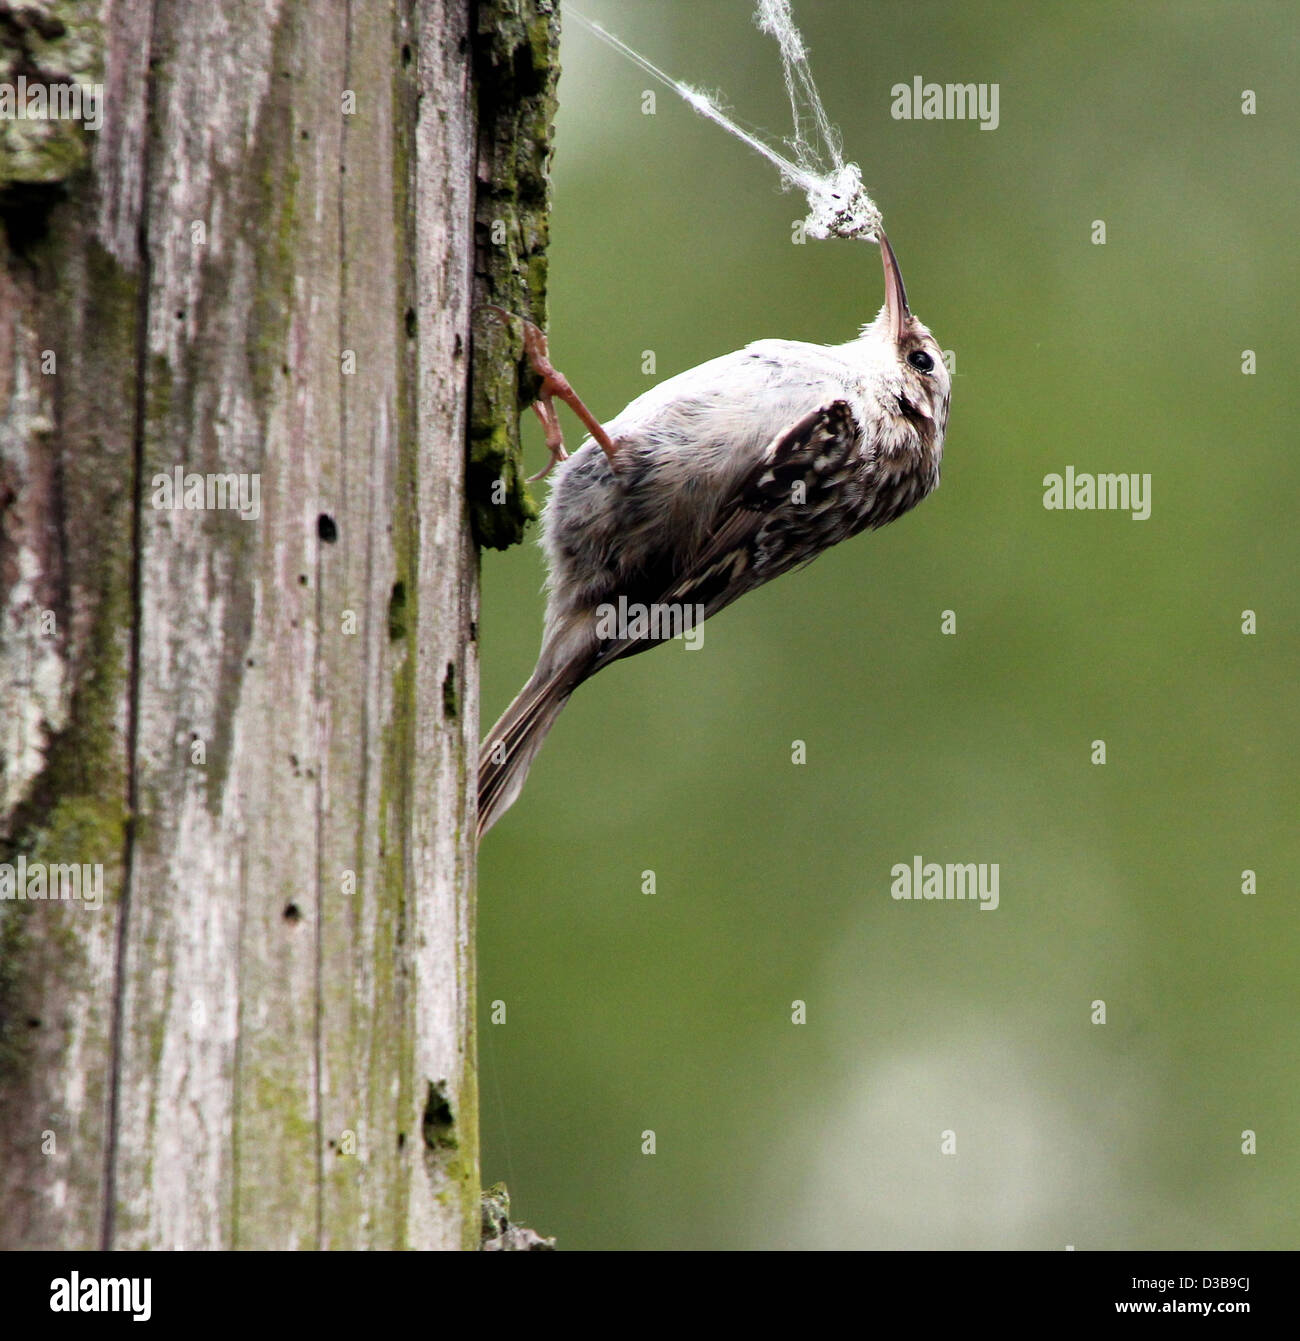 Rampichino (Certhia brachydactyla) foraggio per i piccoli insetti, qui di wrestling con una spider web Foto Stock